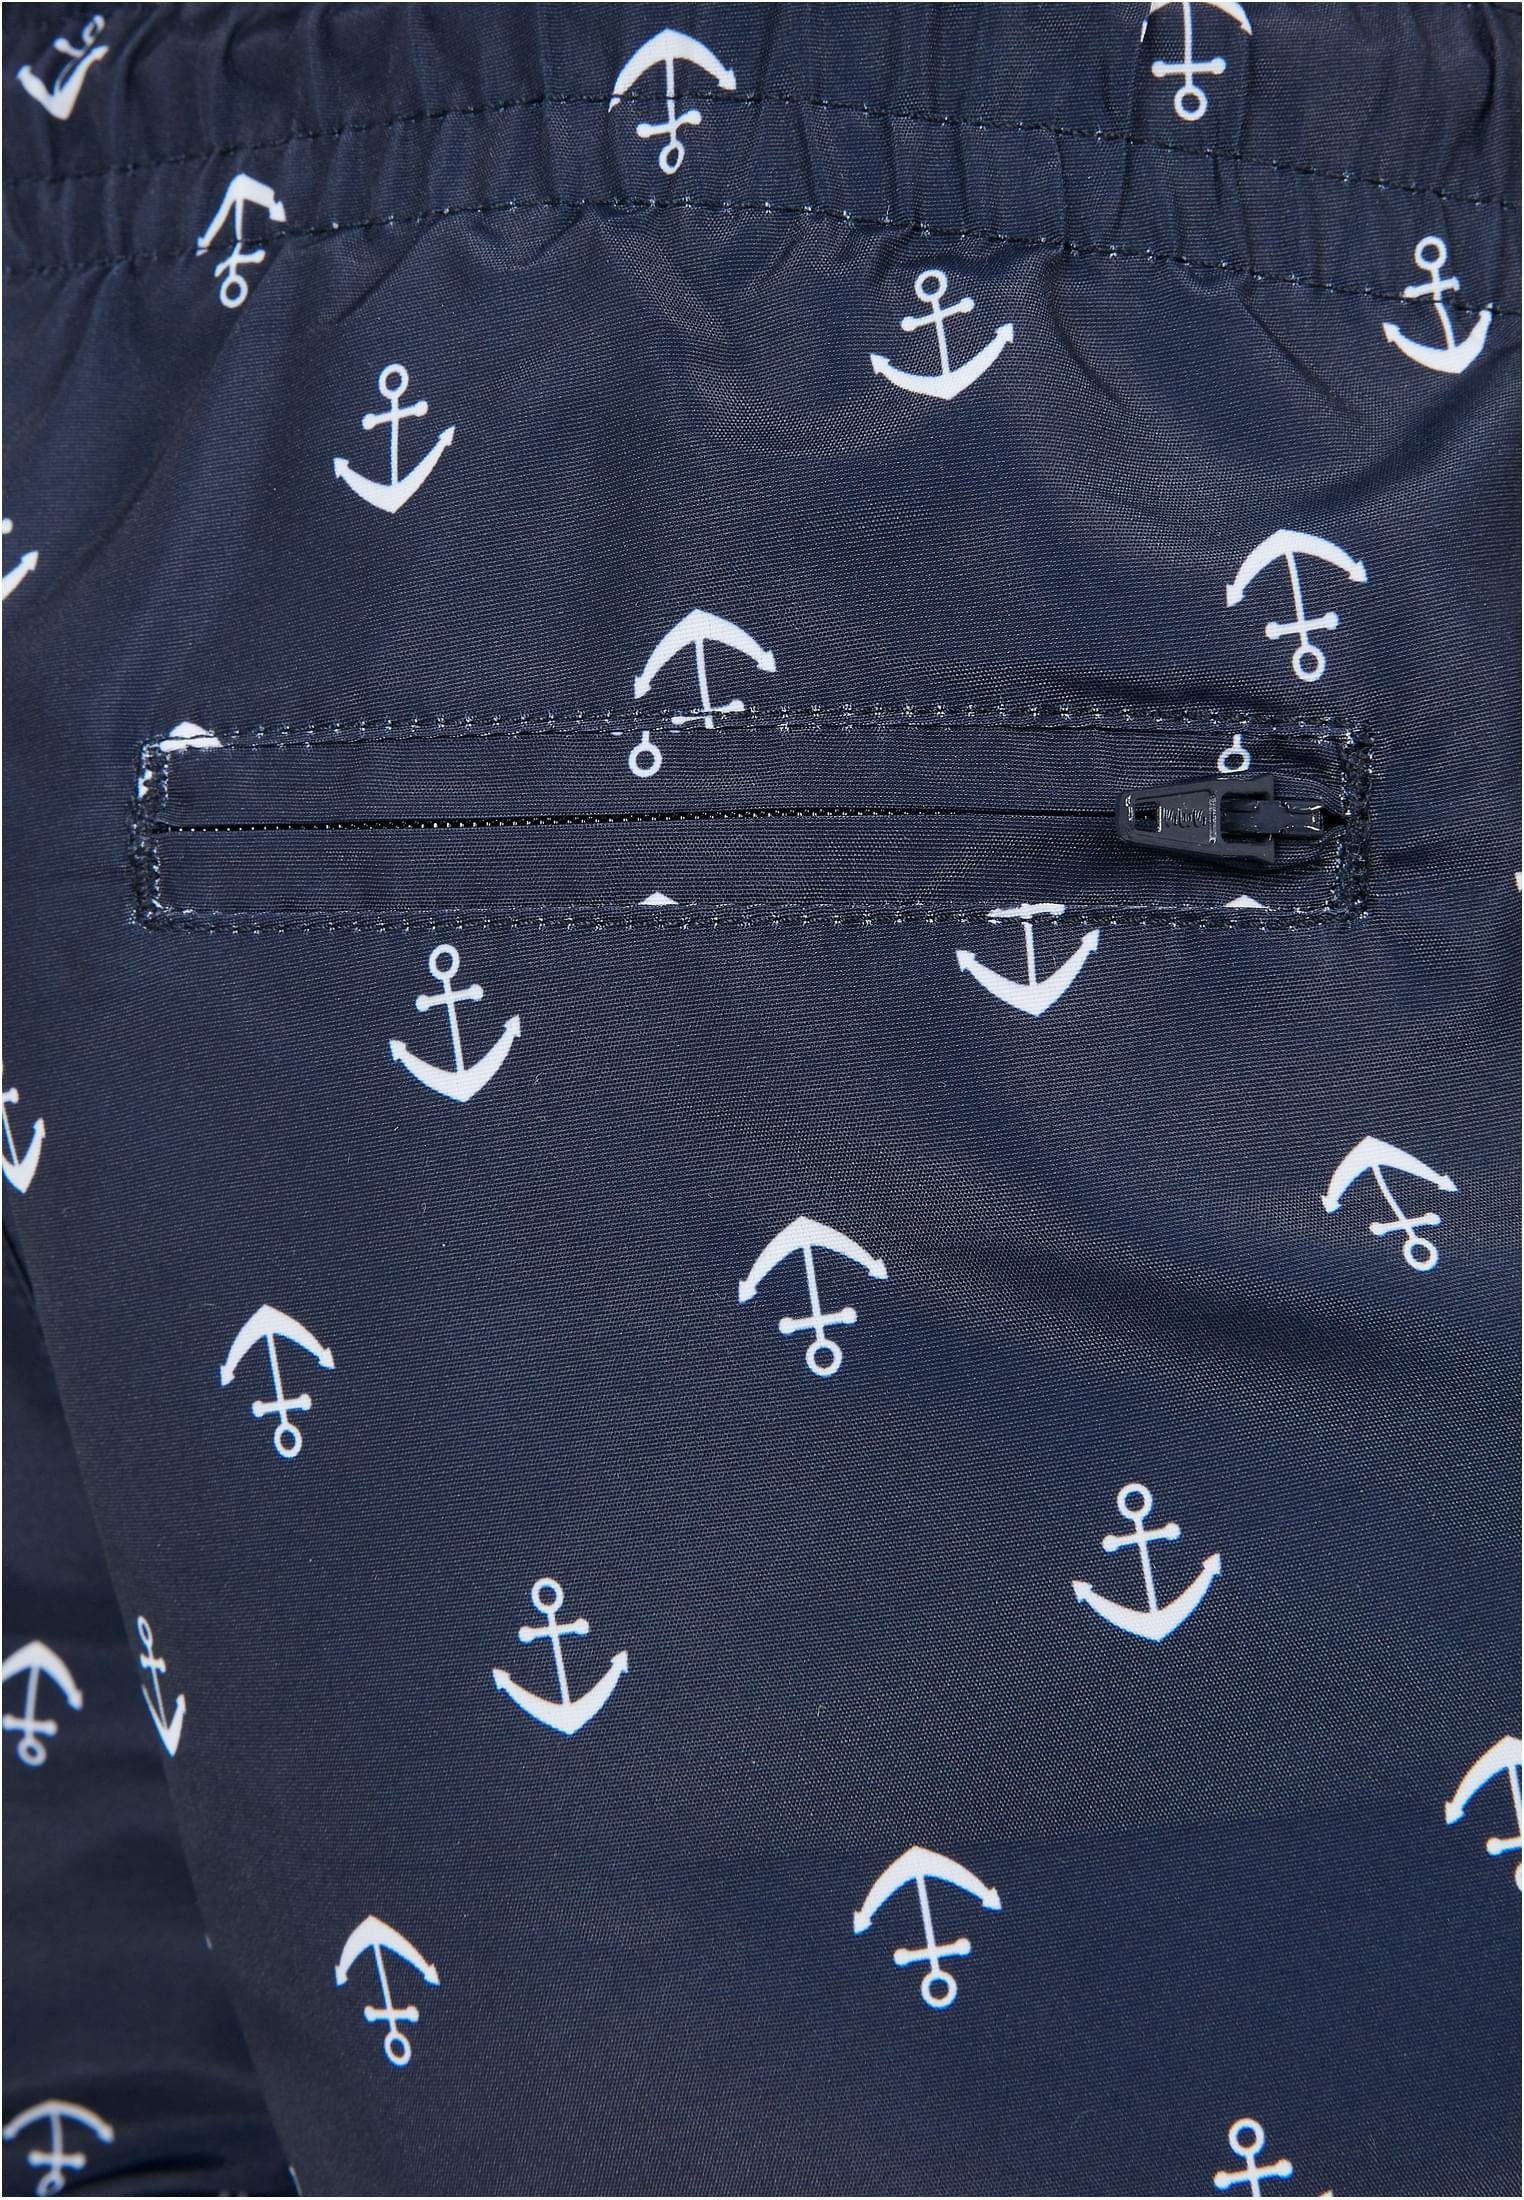 Shorts anchor/navy Boys CLASSICS Herren Badeshorts Pattern URBAN Swim